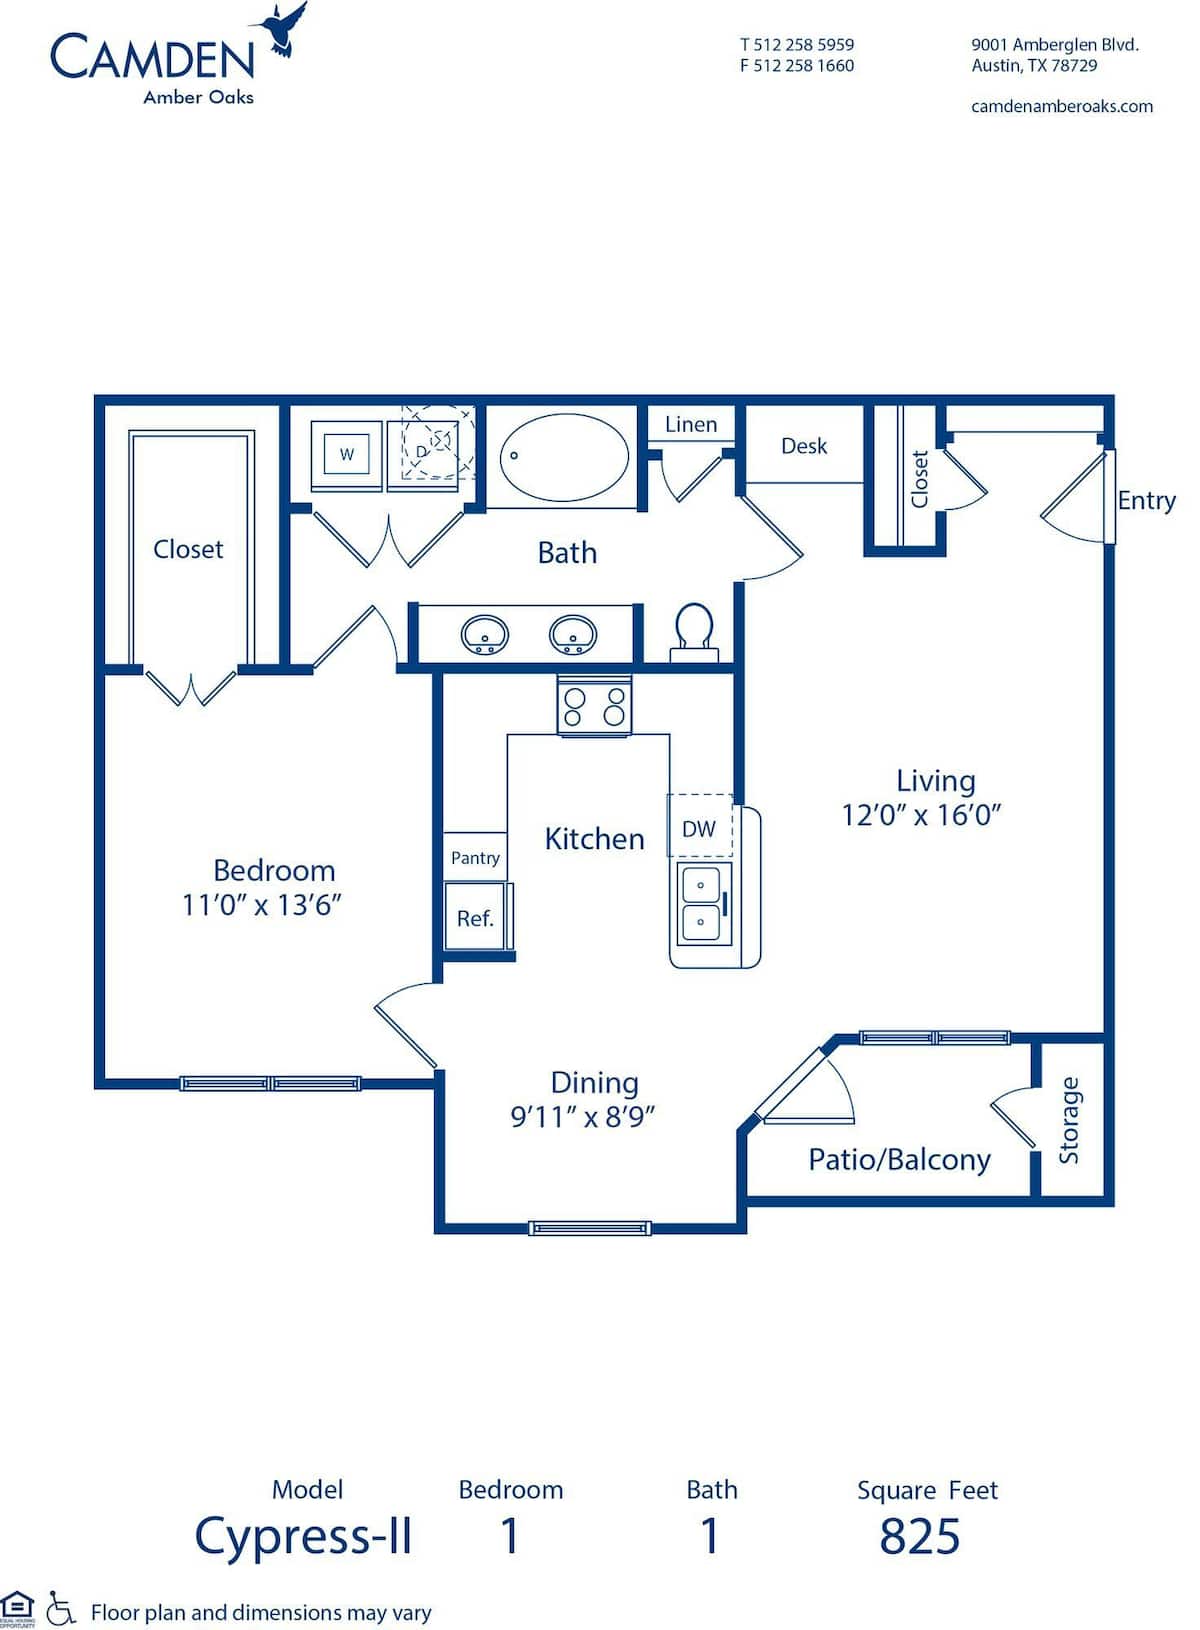 Floorplan diagram for Cypress - II, showing 1 bedroom